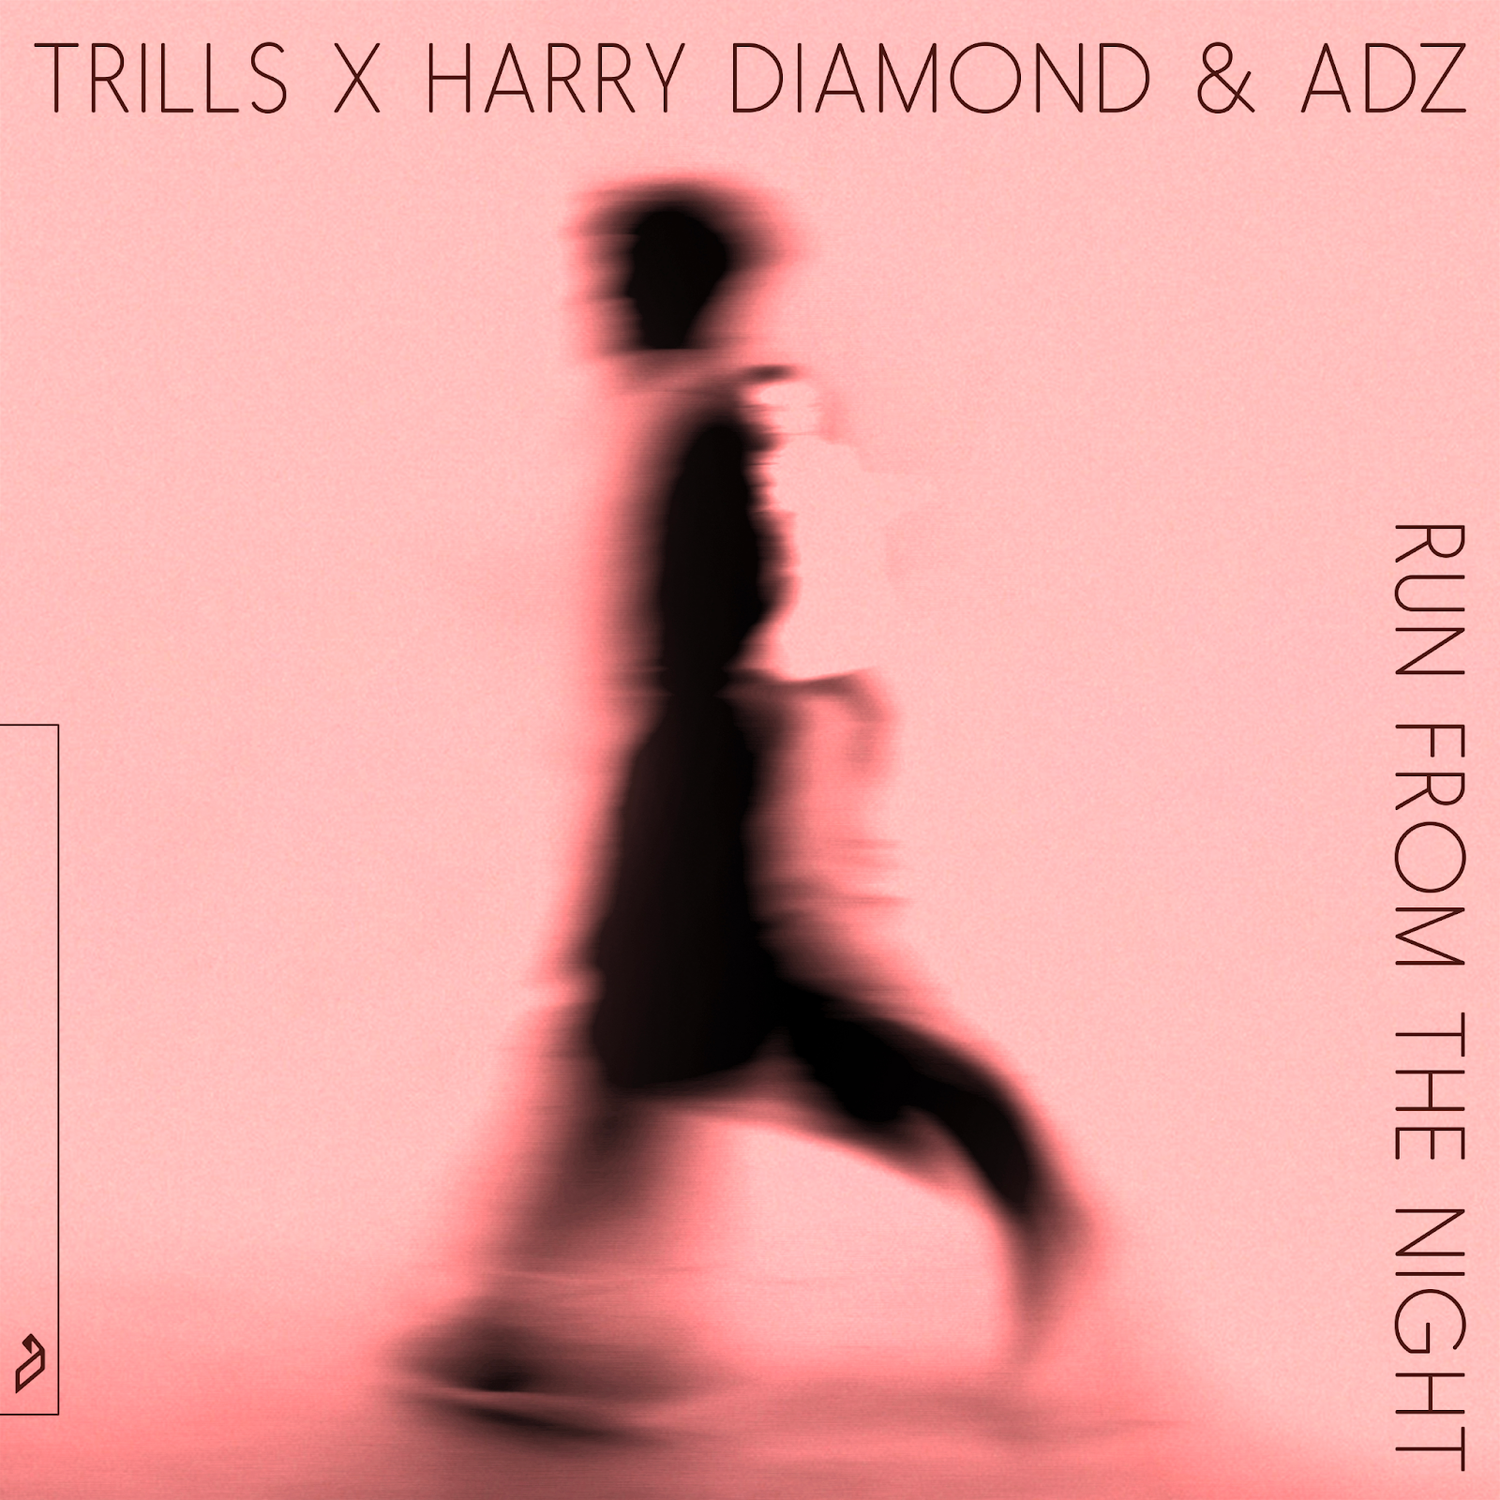 Trills x Harry Diamond & ADZ